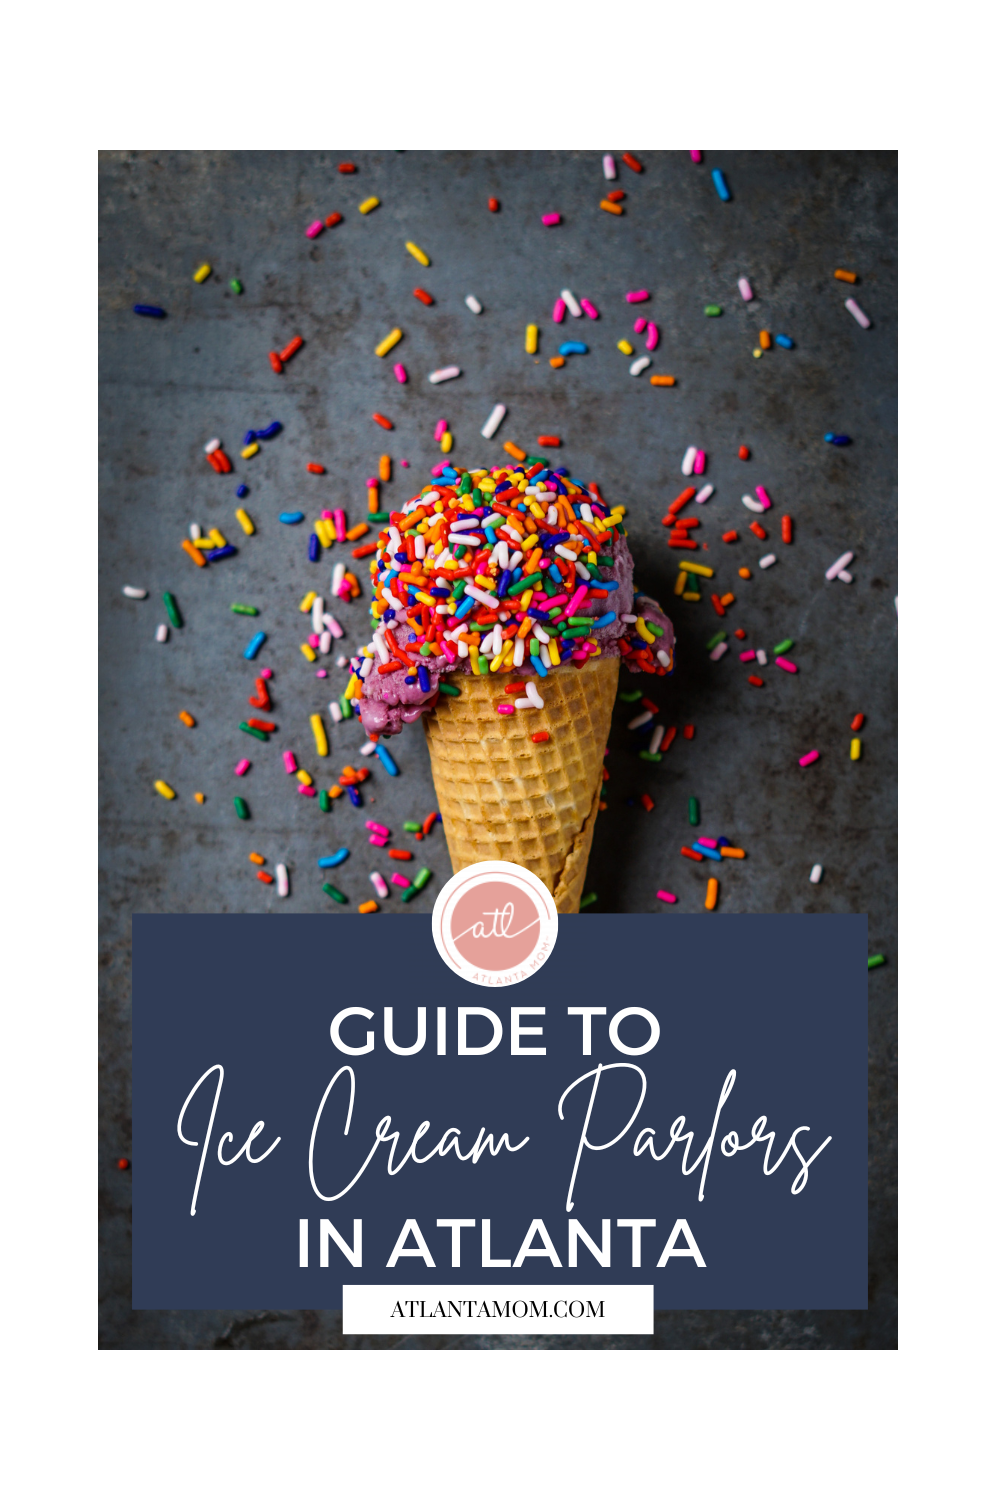 A Guide to Atlanta’s Favorite Ice Cream Spots